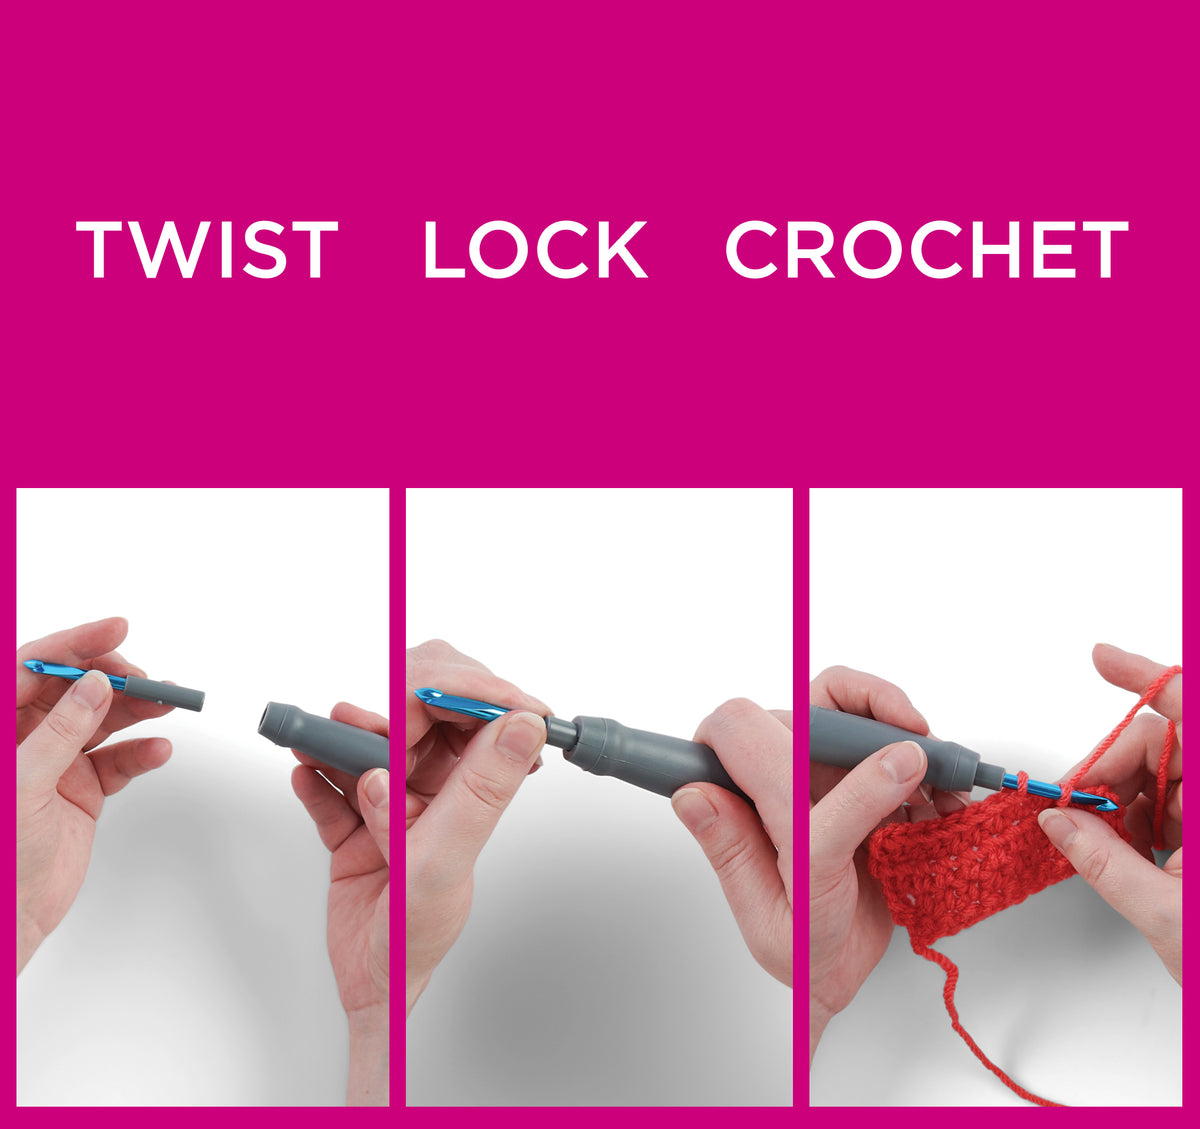 Twist, Lock, Crochet